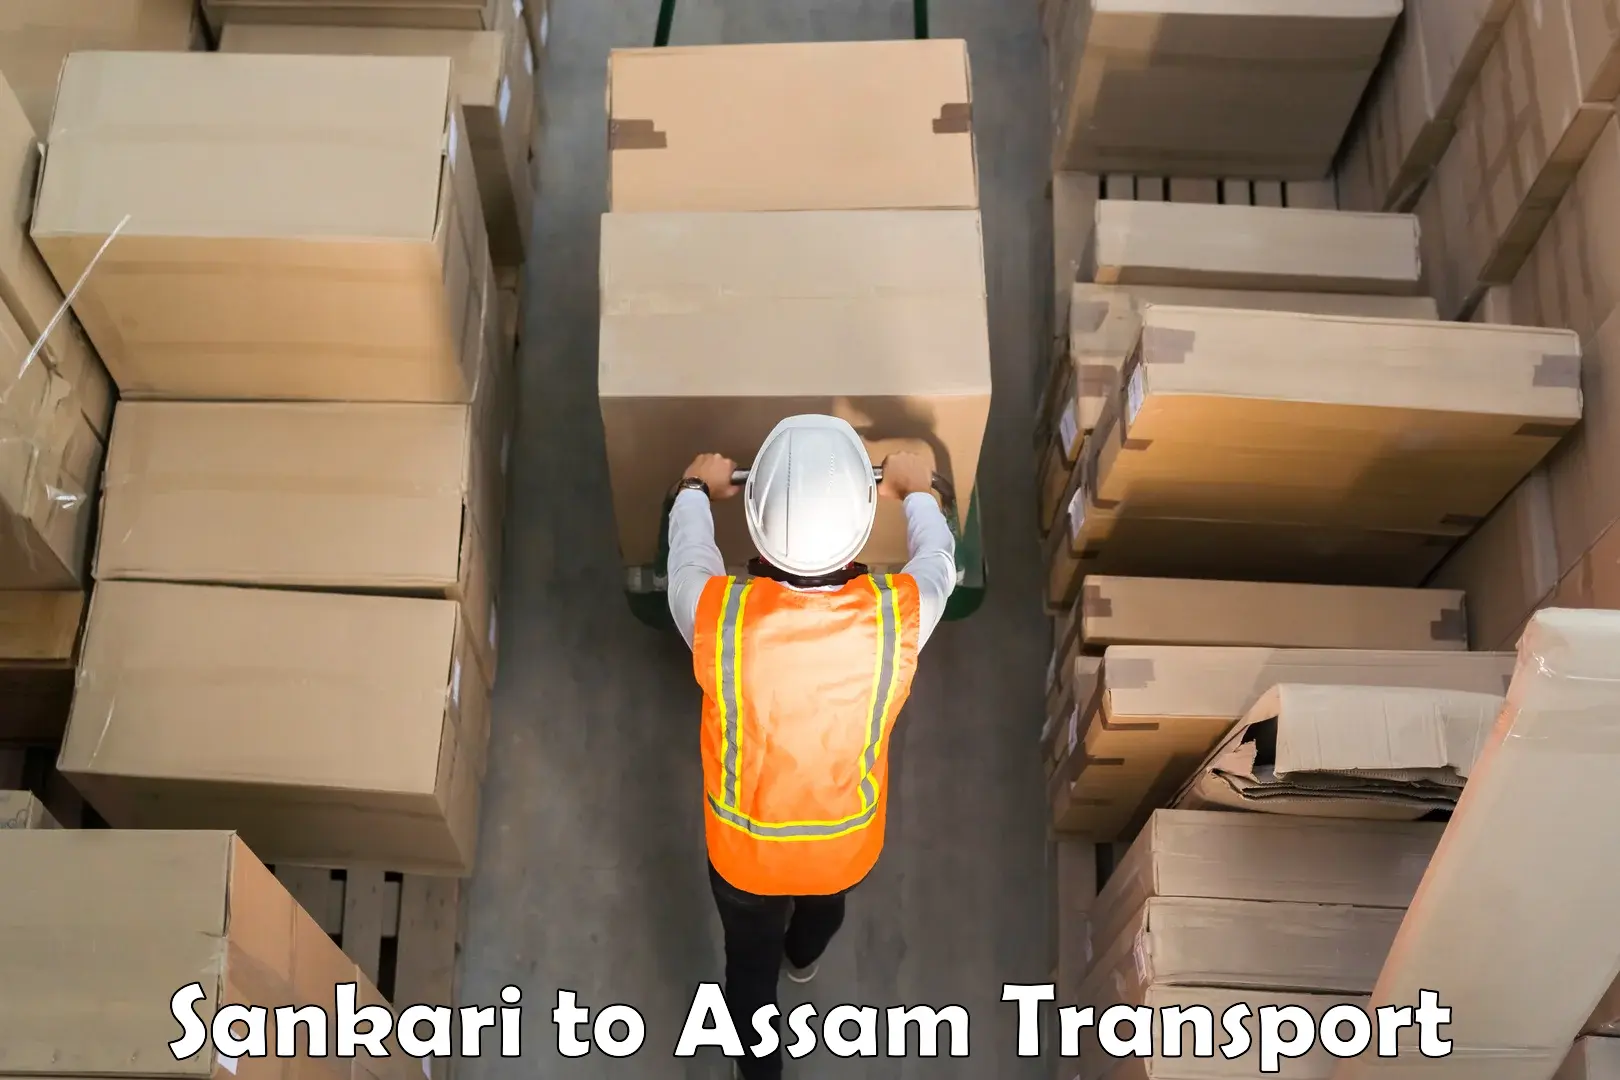 International cargo transportation services Sankari to Assam